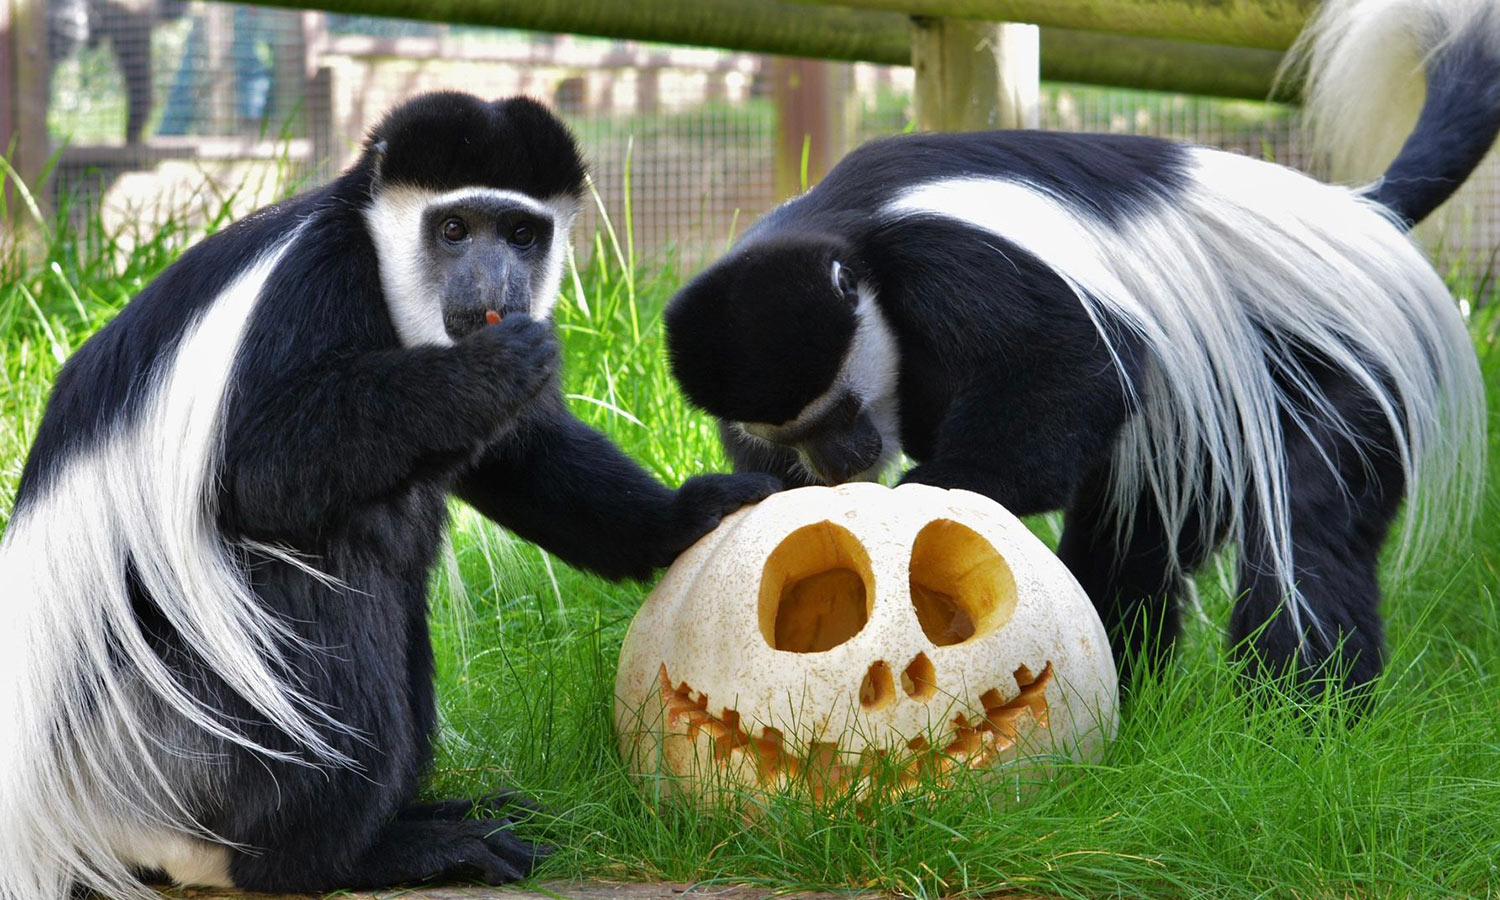 Colobus monkeys looking at a pumpkin